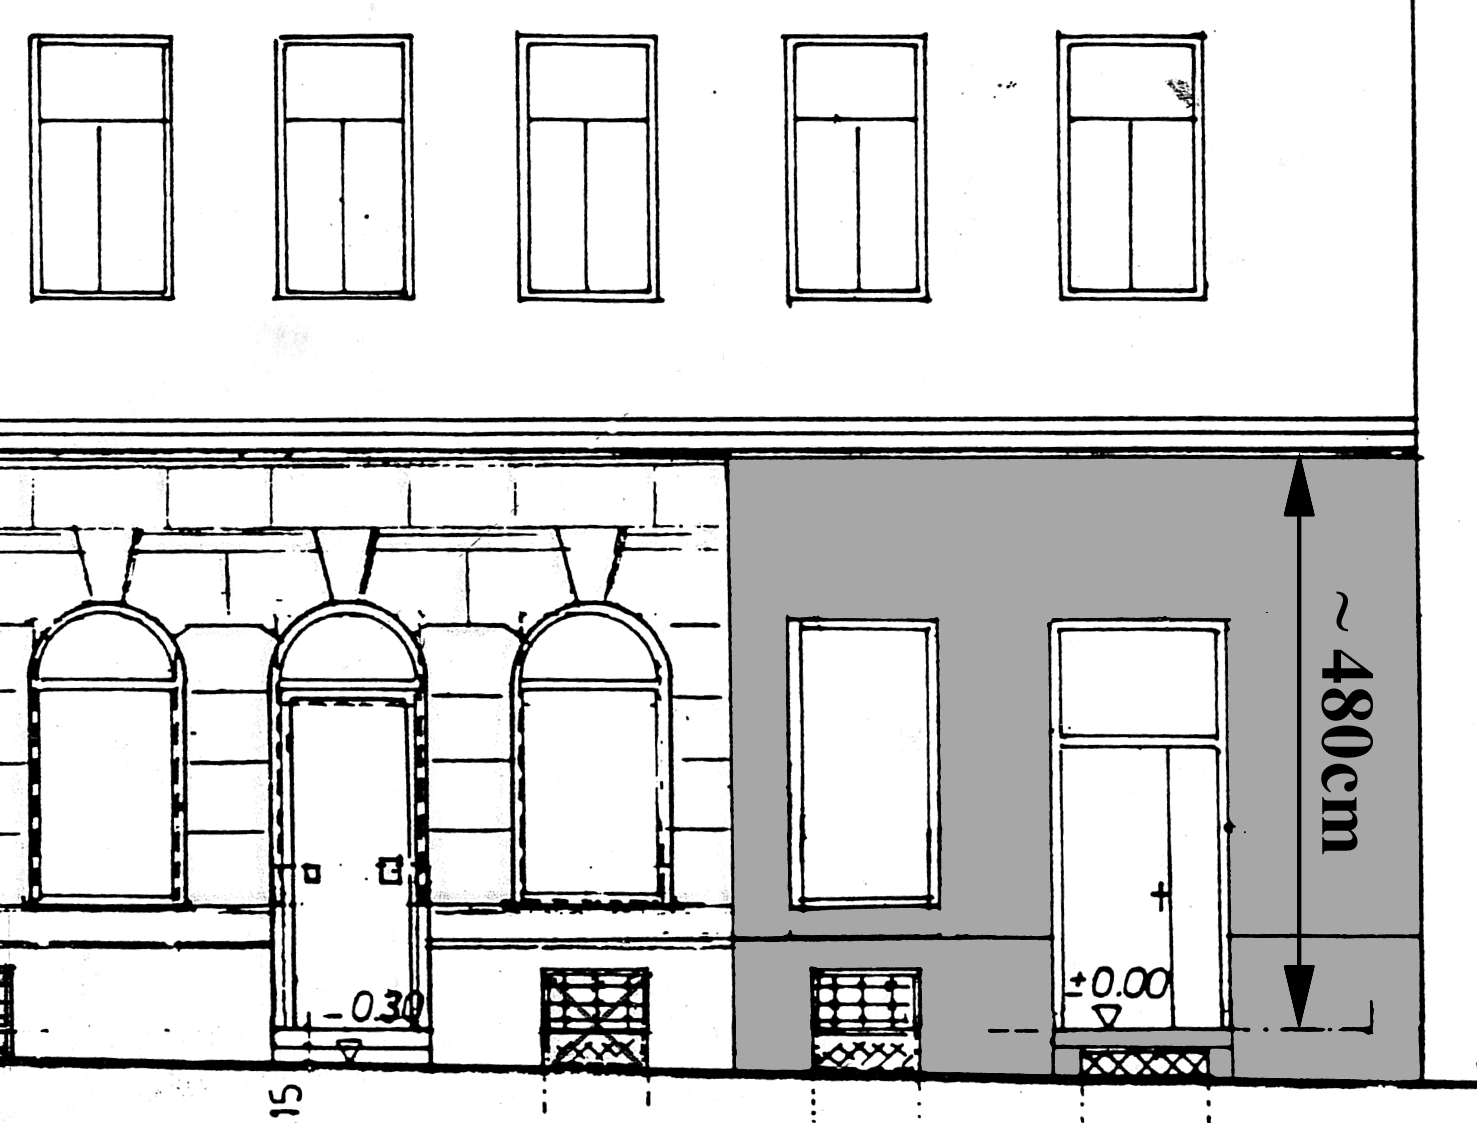 Abbildung 6.1: Ansicht der Häuserfront von der Straße. Der graue Bereich ist die Außenmauer der konkreten Einheit samt Eingang und dem leider einzigen Fenster.